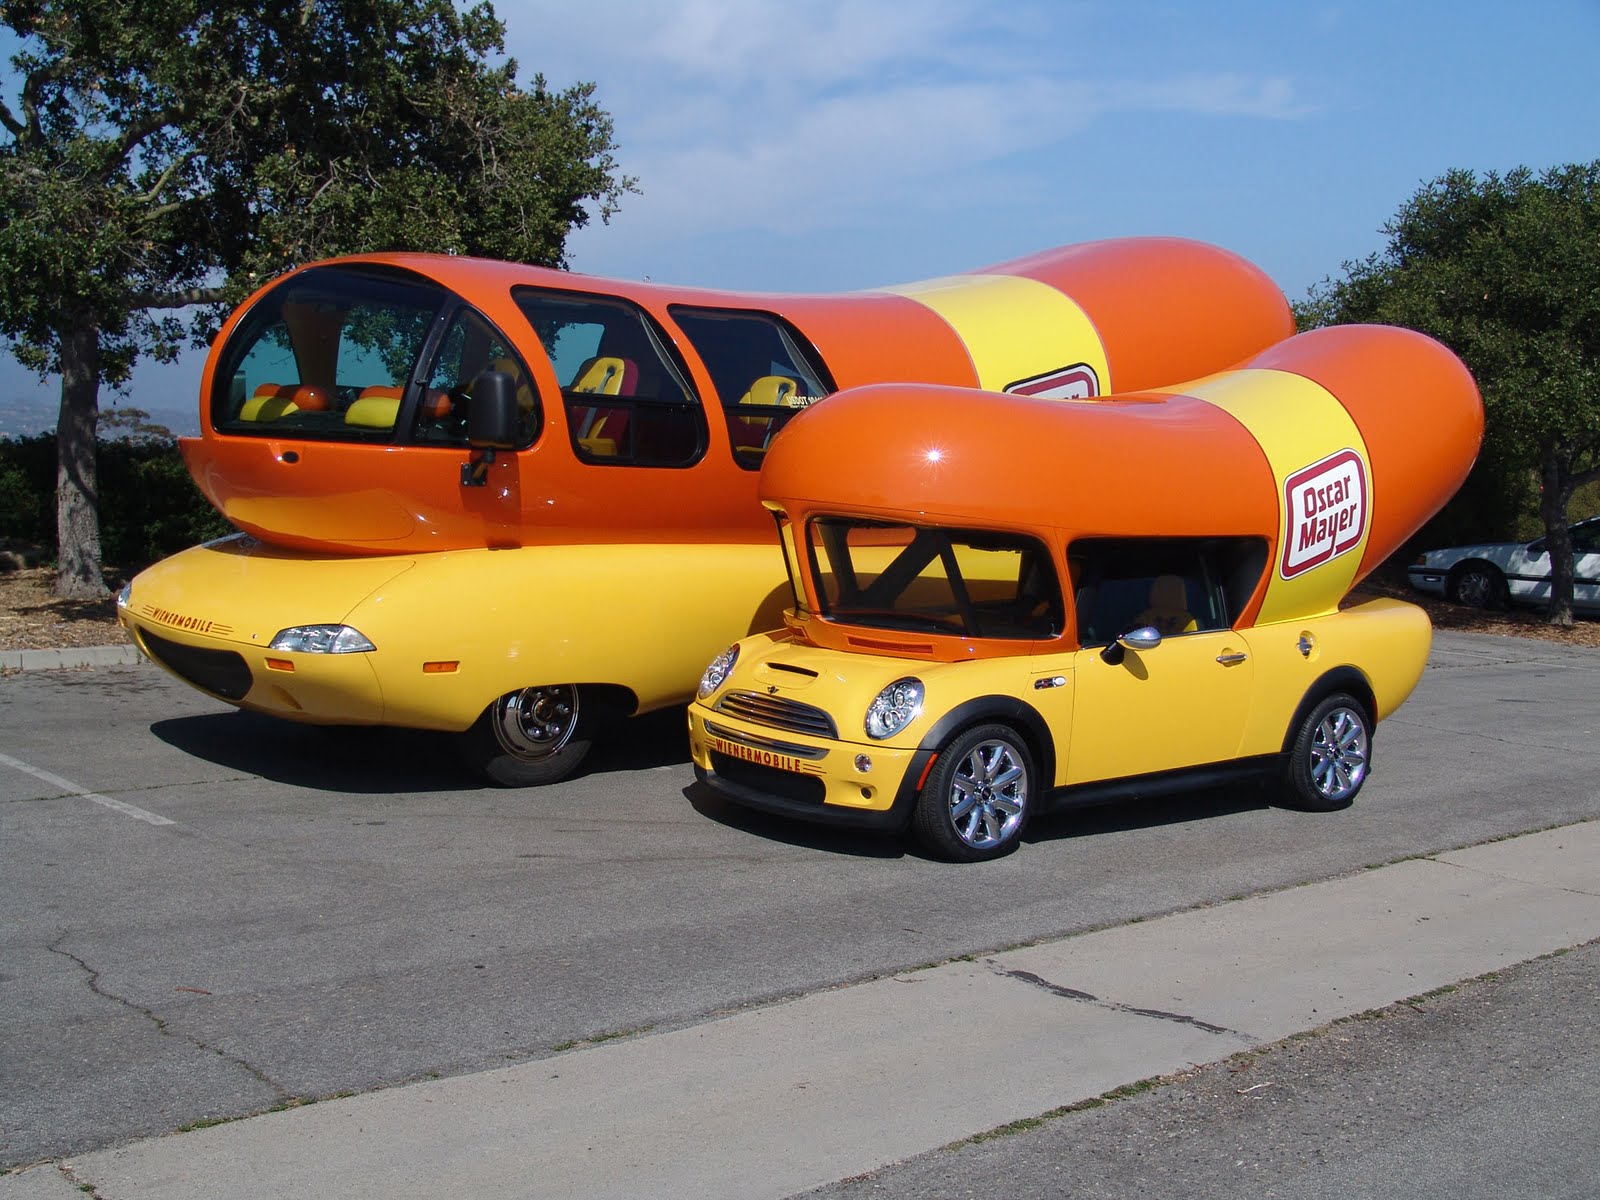 Wienermobile Fun Facts